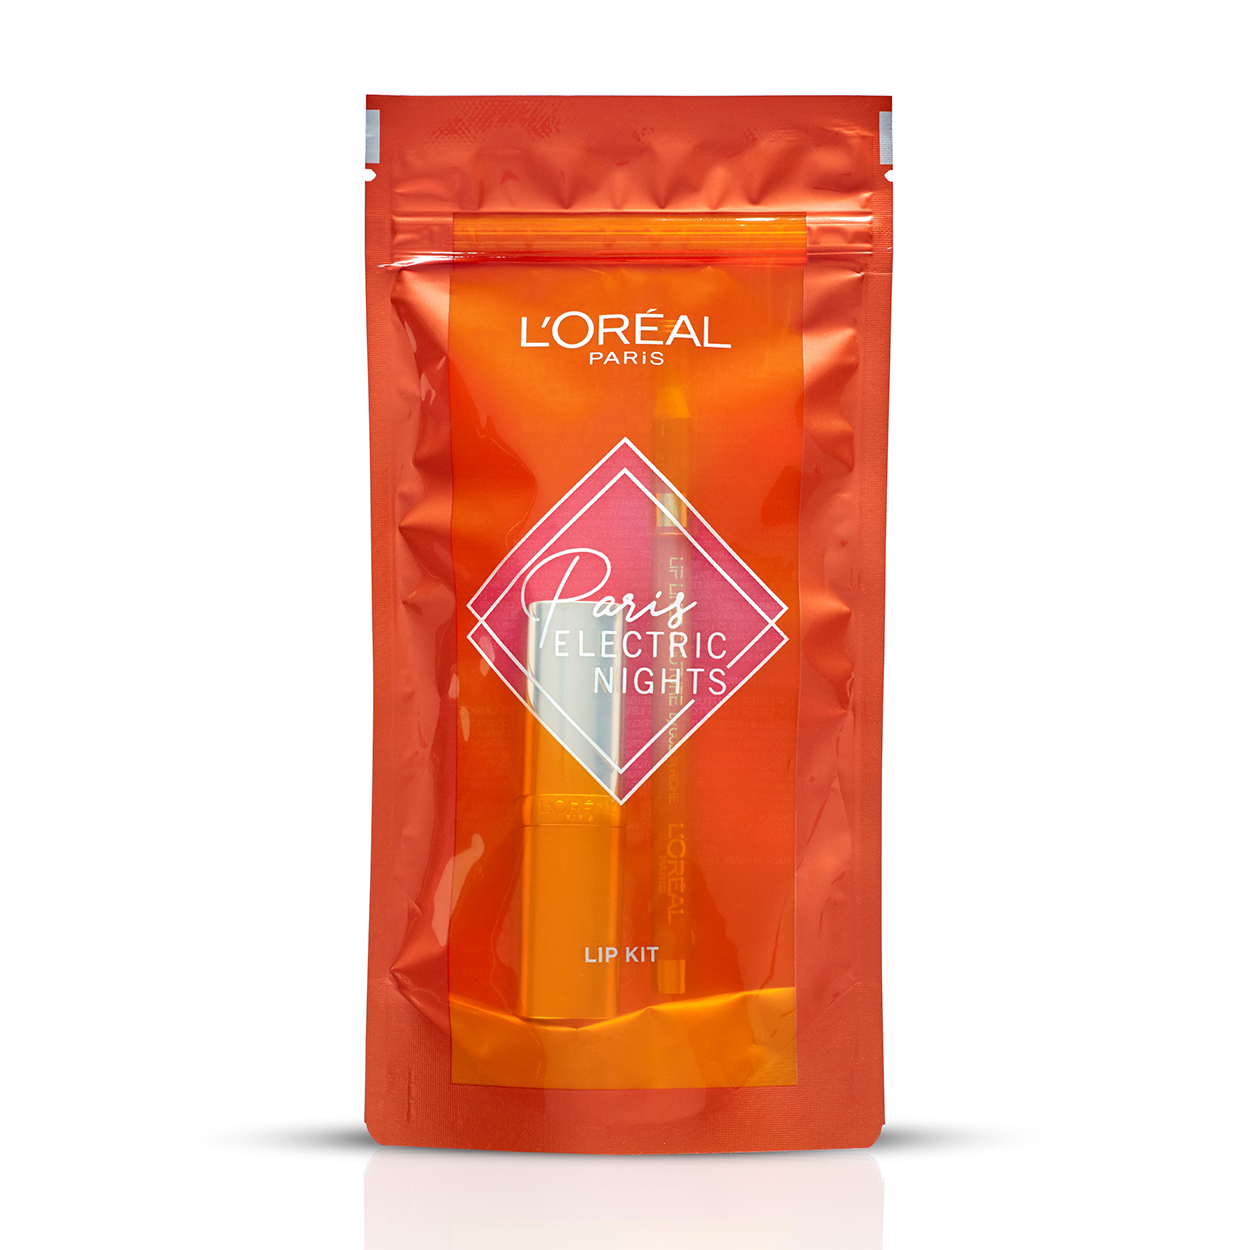 L'Oréal Paris Electric Nights – Lip kit met Color Riche Satin 630 Beige à Nu lippenstift en bijpassende Lip Liner Couture 630 Beige à Nu – Nude L’Oréal lippenstift en lipliner